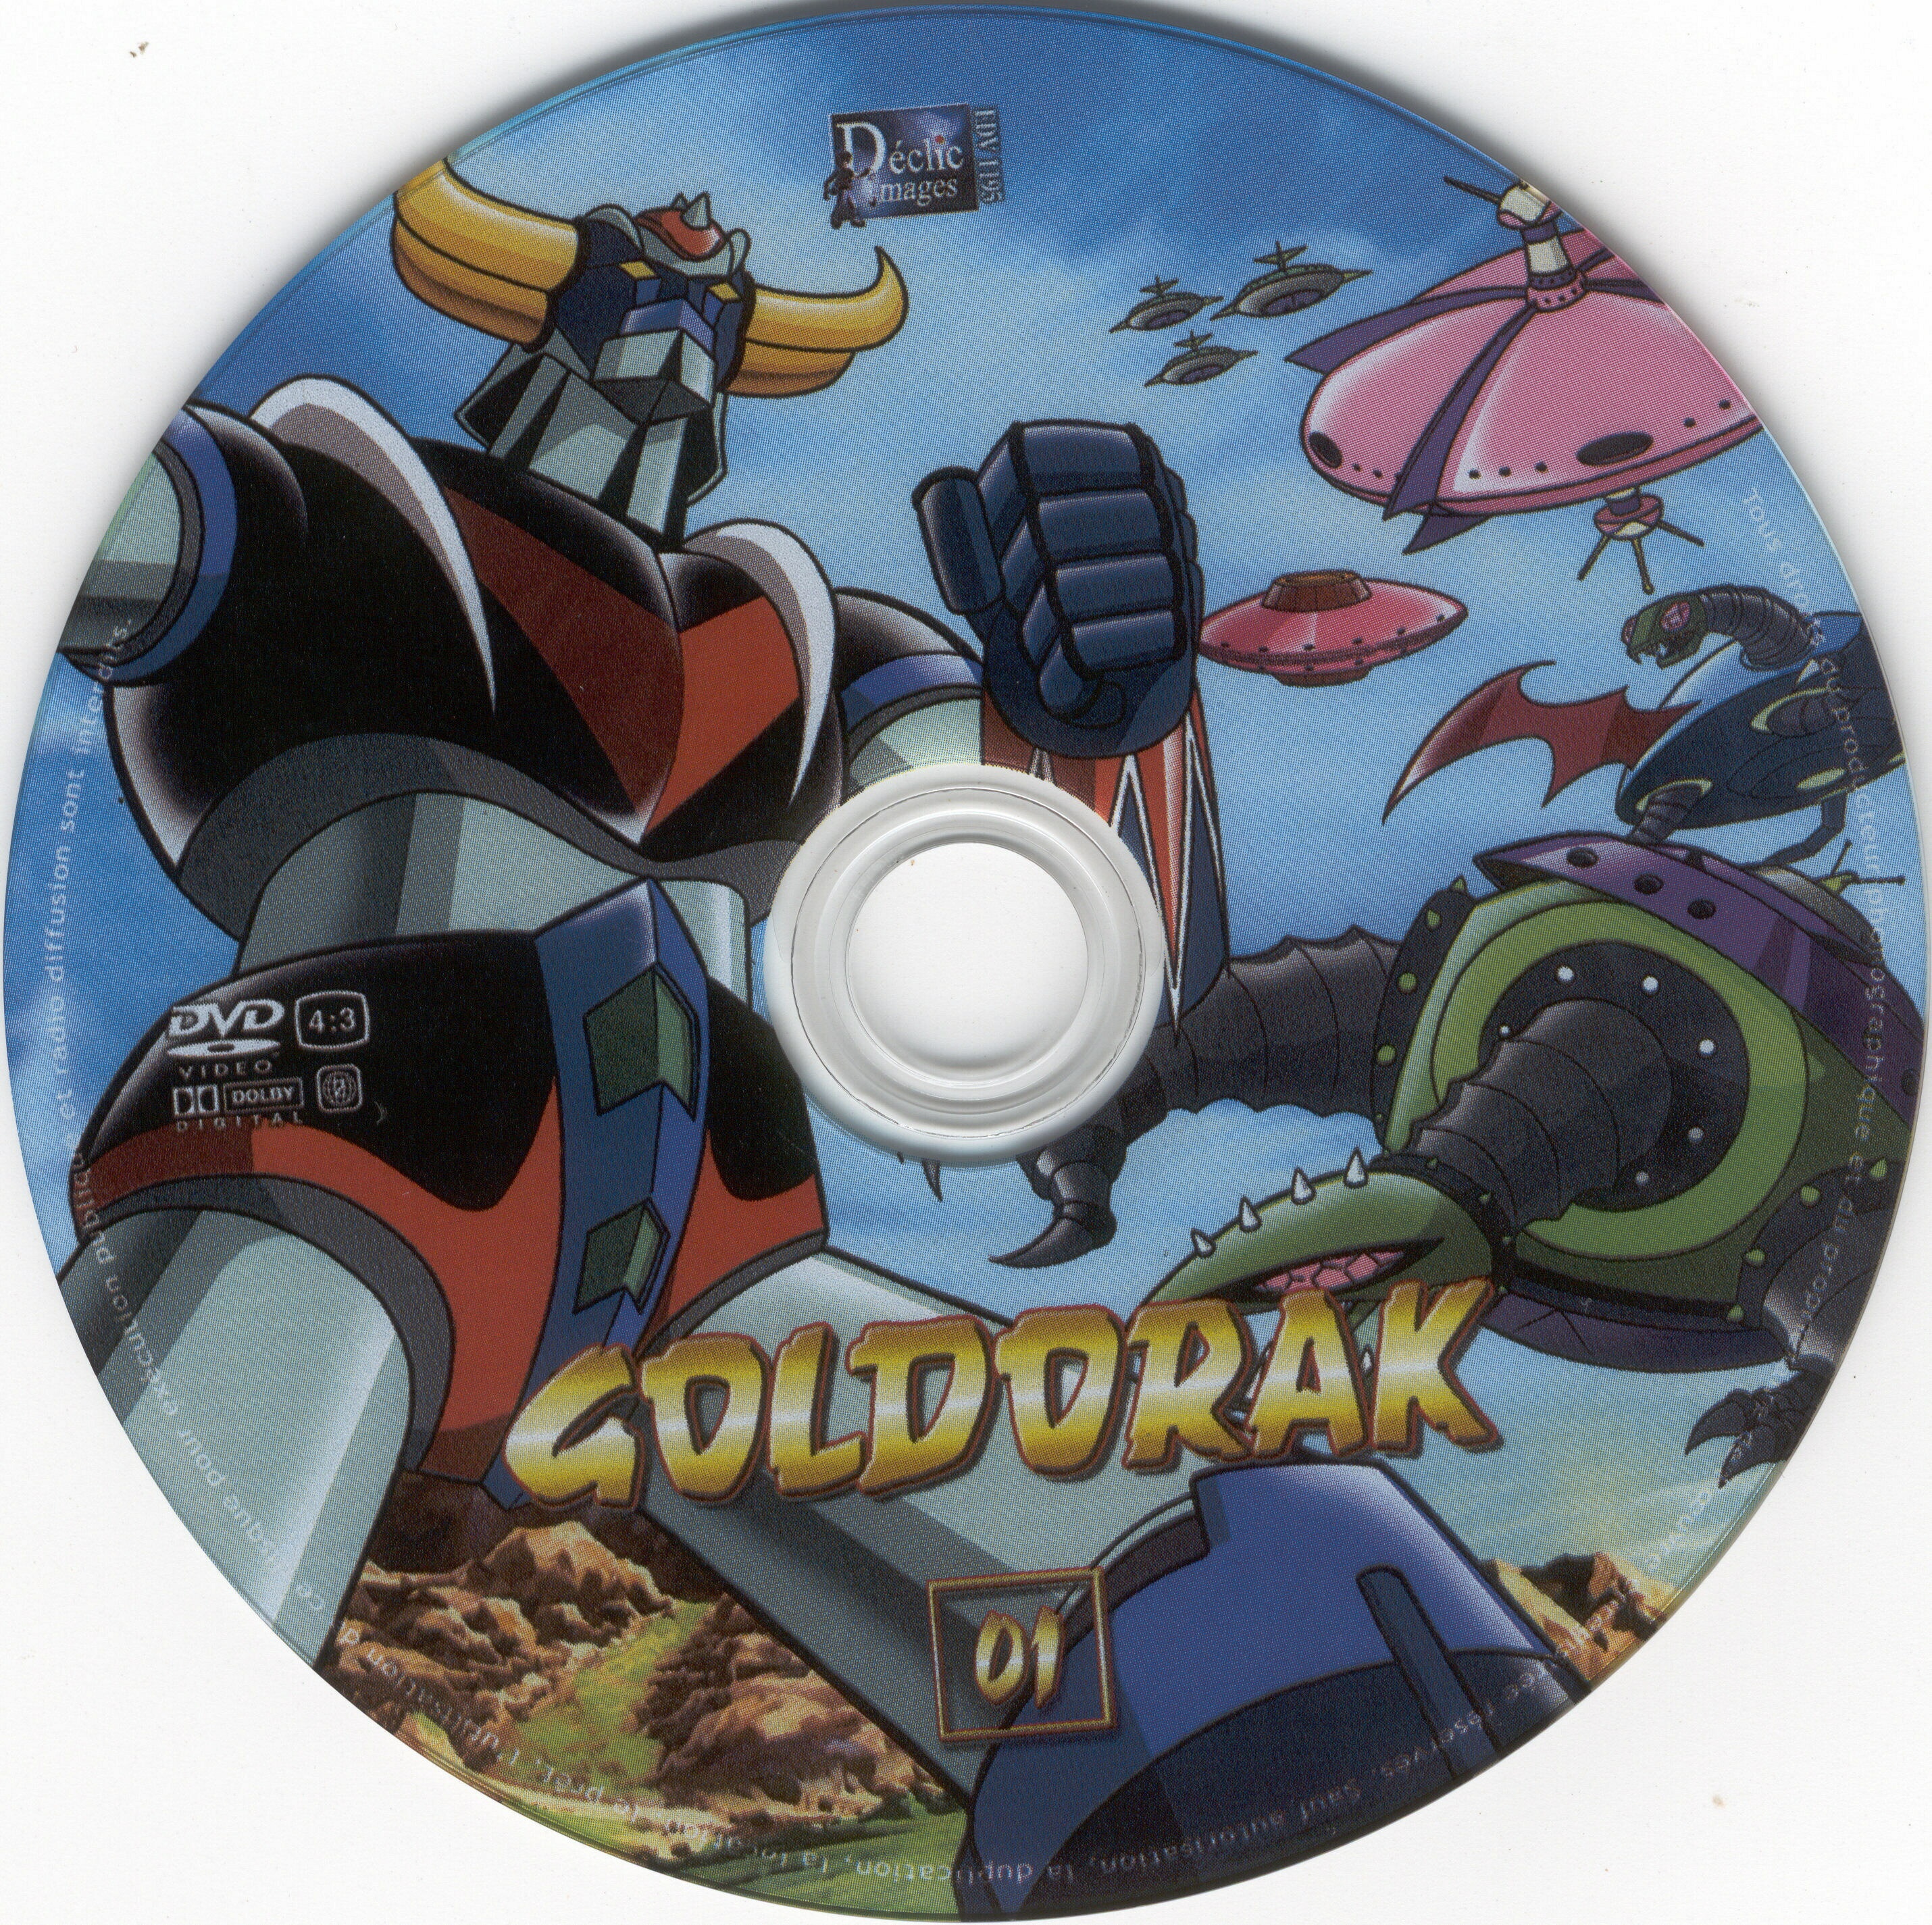 Goldorak vol 01